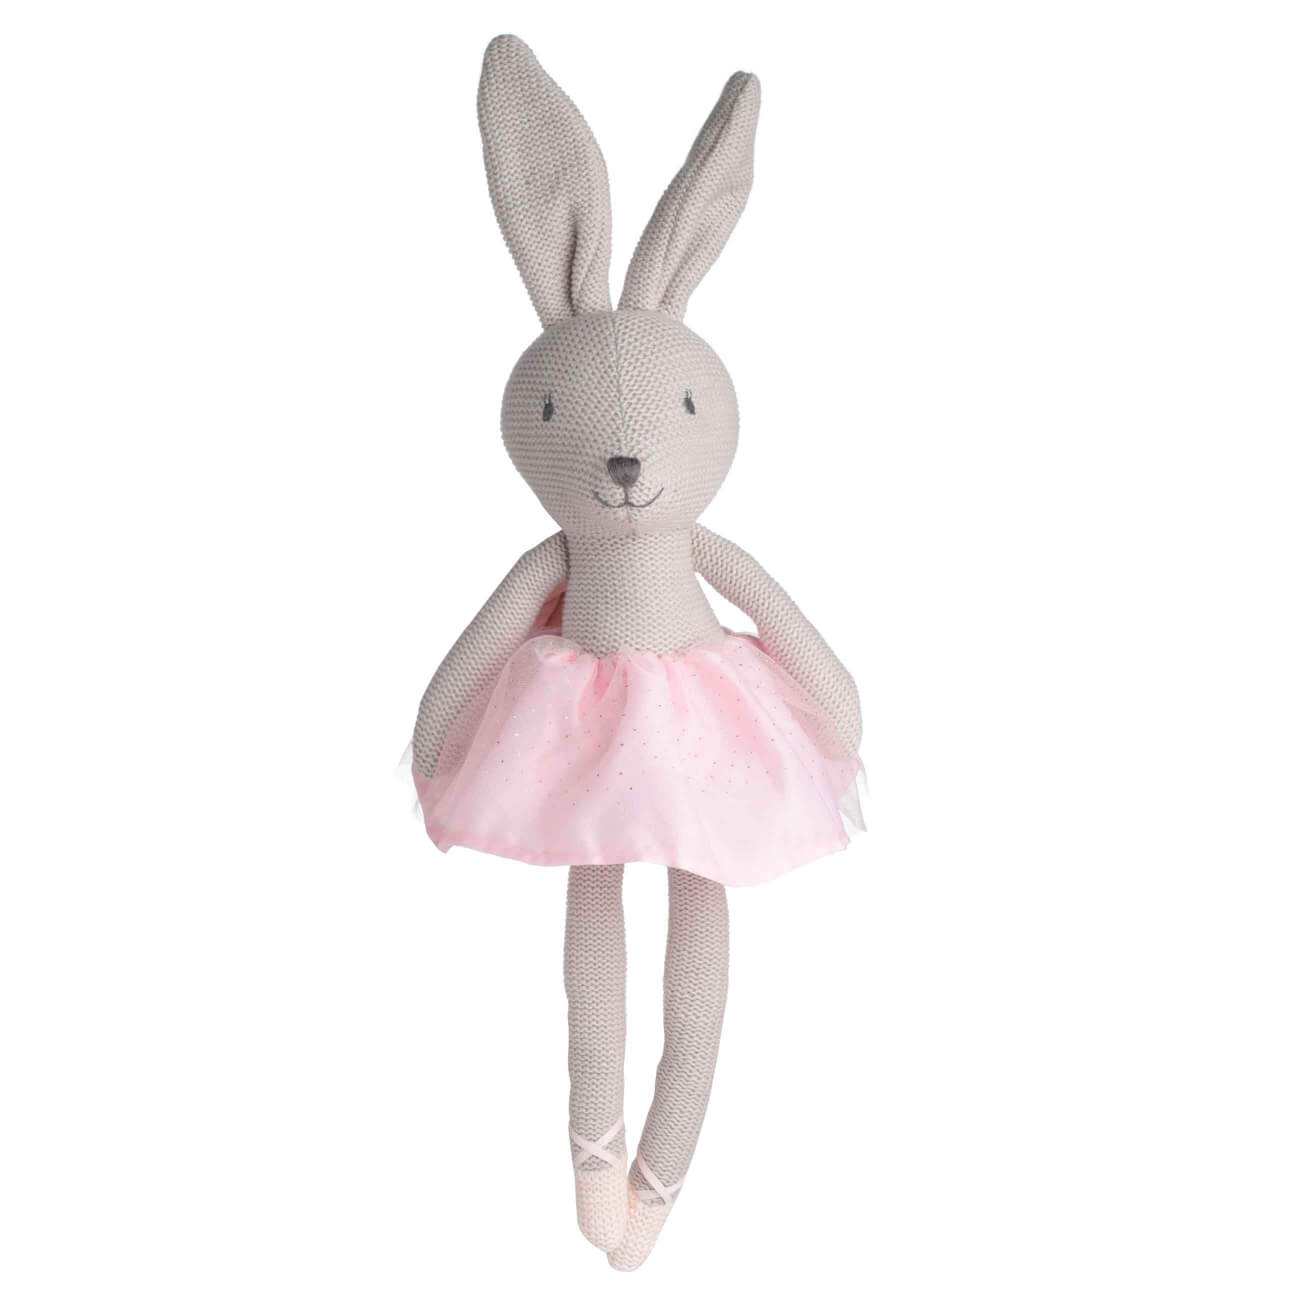 Игрушка, 35 см, мягкая, хлопок, бежевая, Зайка в юбке, Rabbit игрушка 21 см мягкая полиэстер розовая зайка с бантиком rabbit